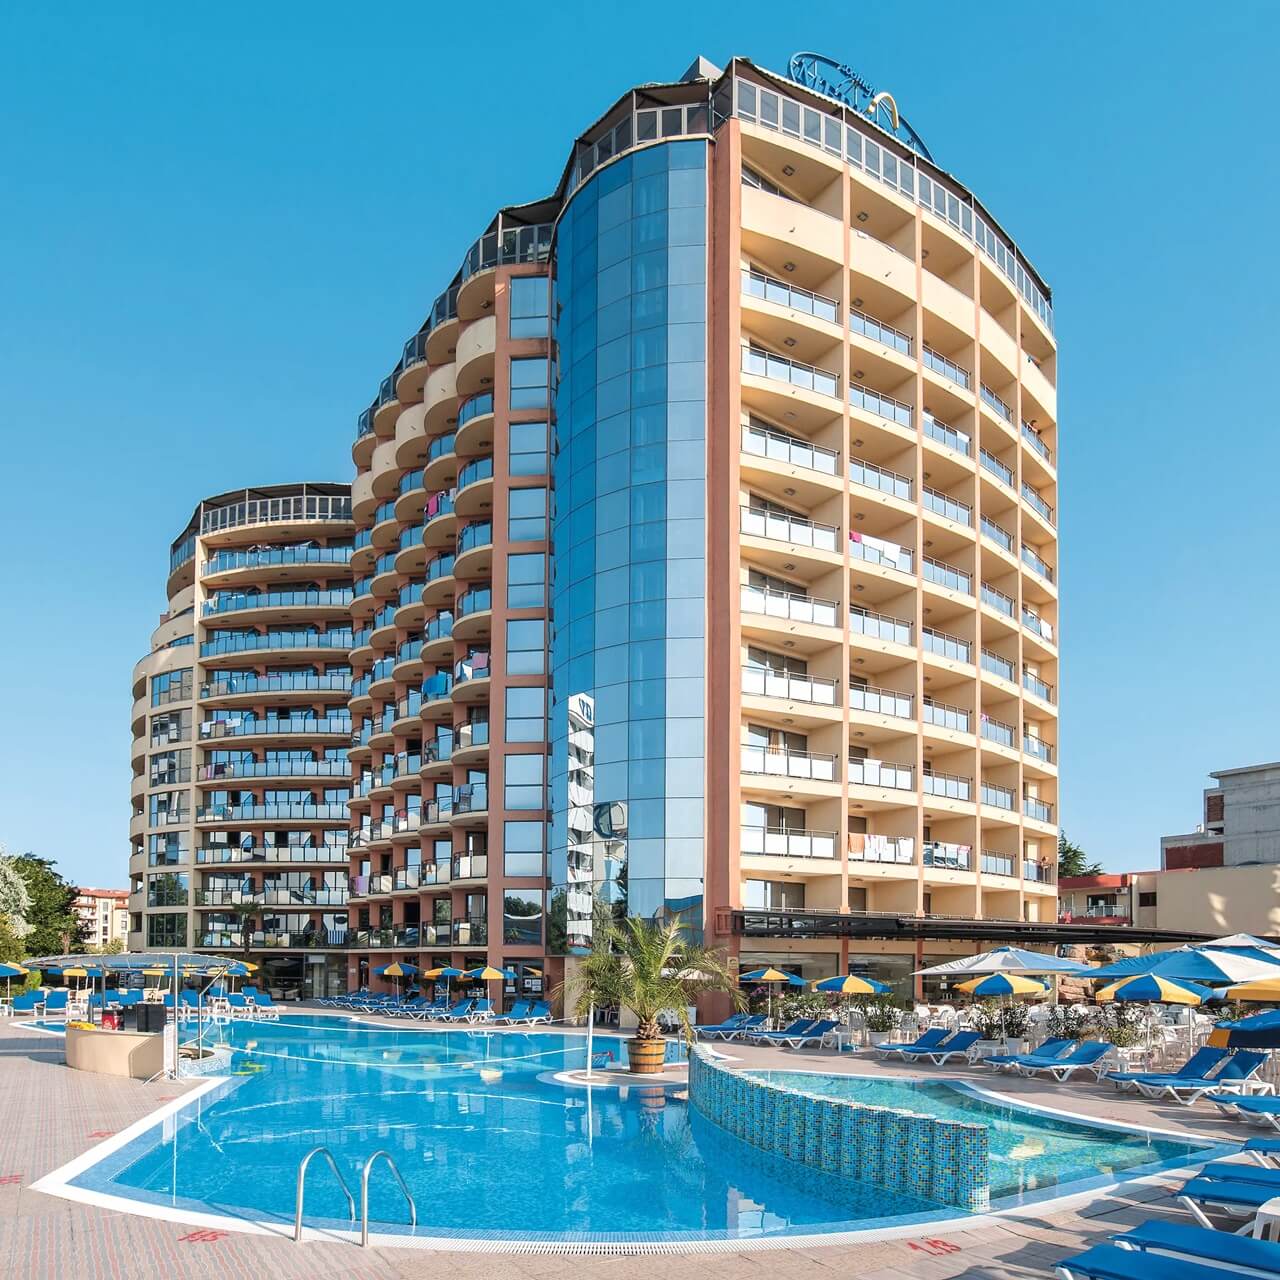 Meridian Hotel - Sunny Beach - Bulgaristan (1)